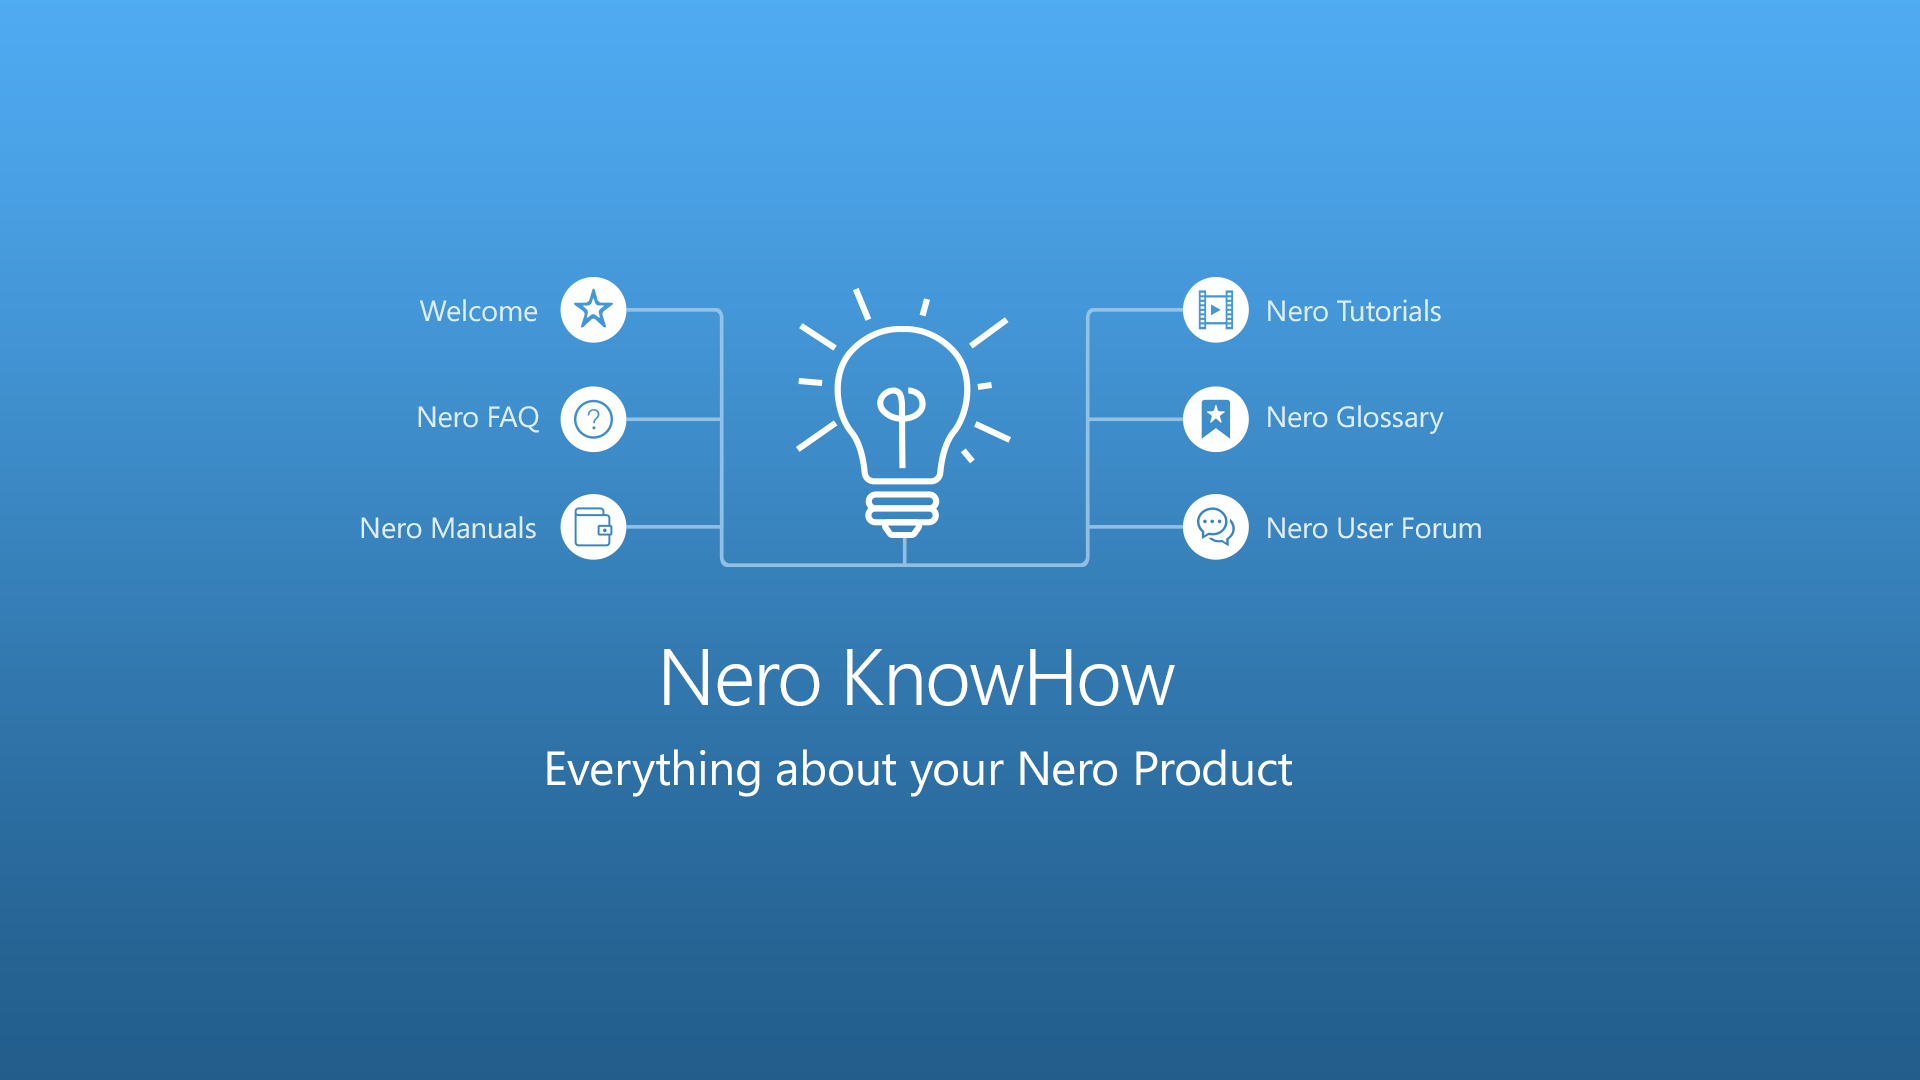 Nero KnowHow